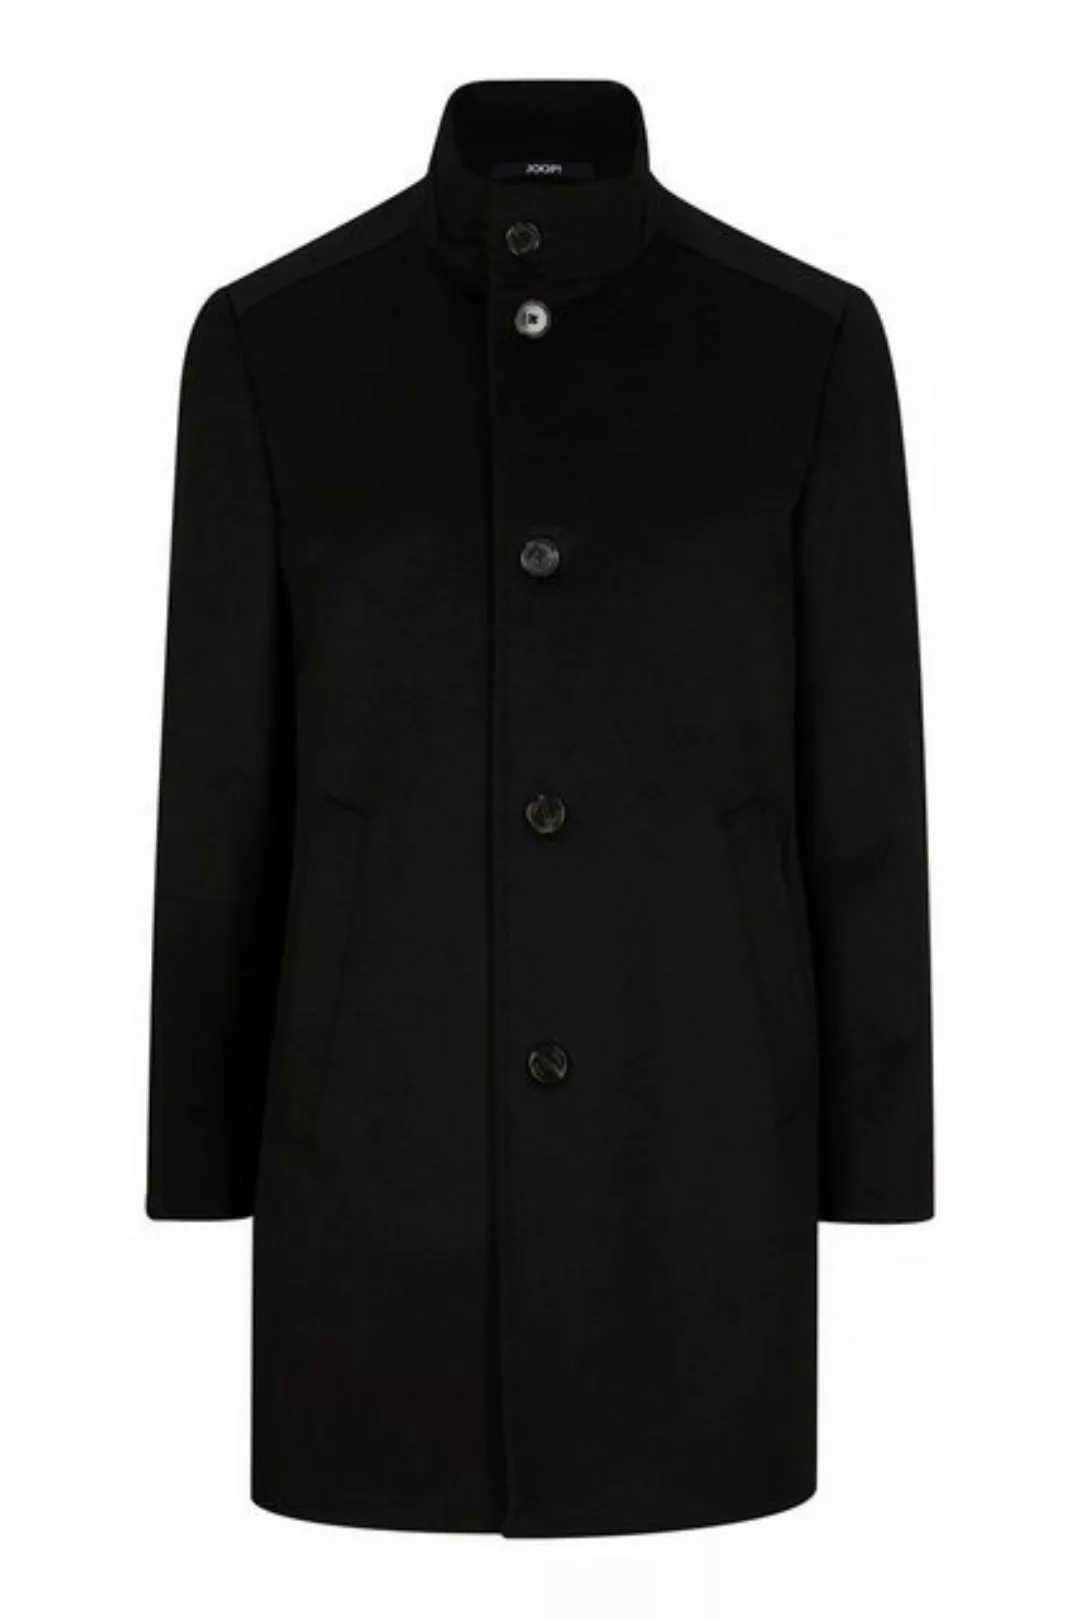 Joop! Wollmantel Mantel Maron günstig online kaufen